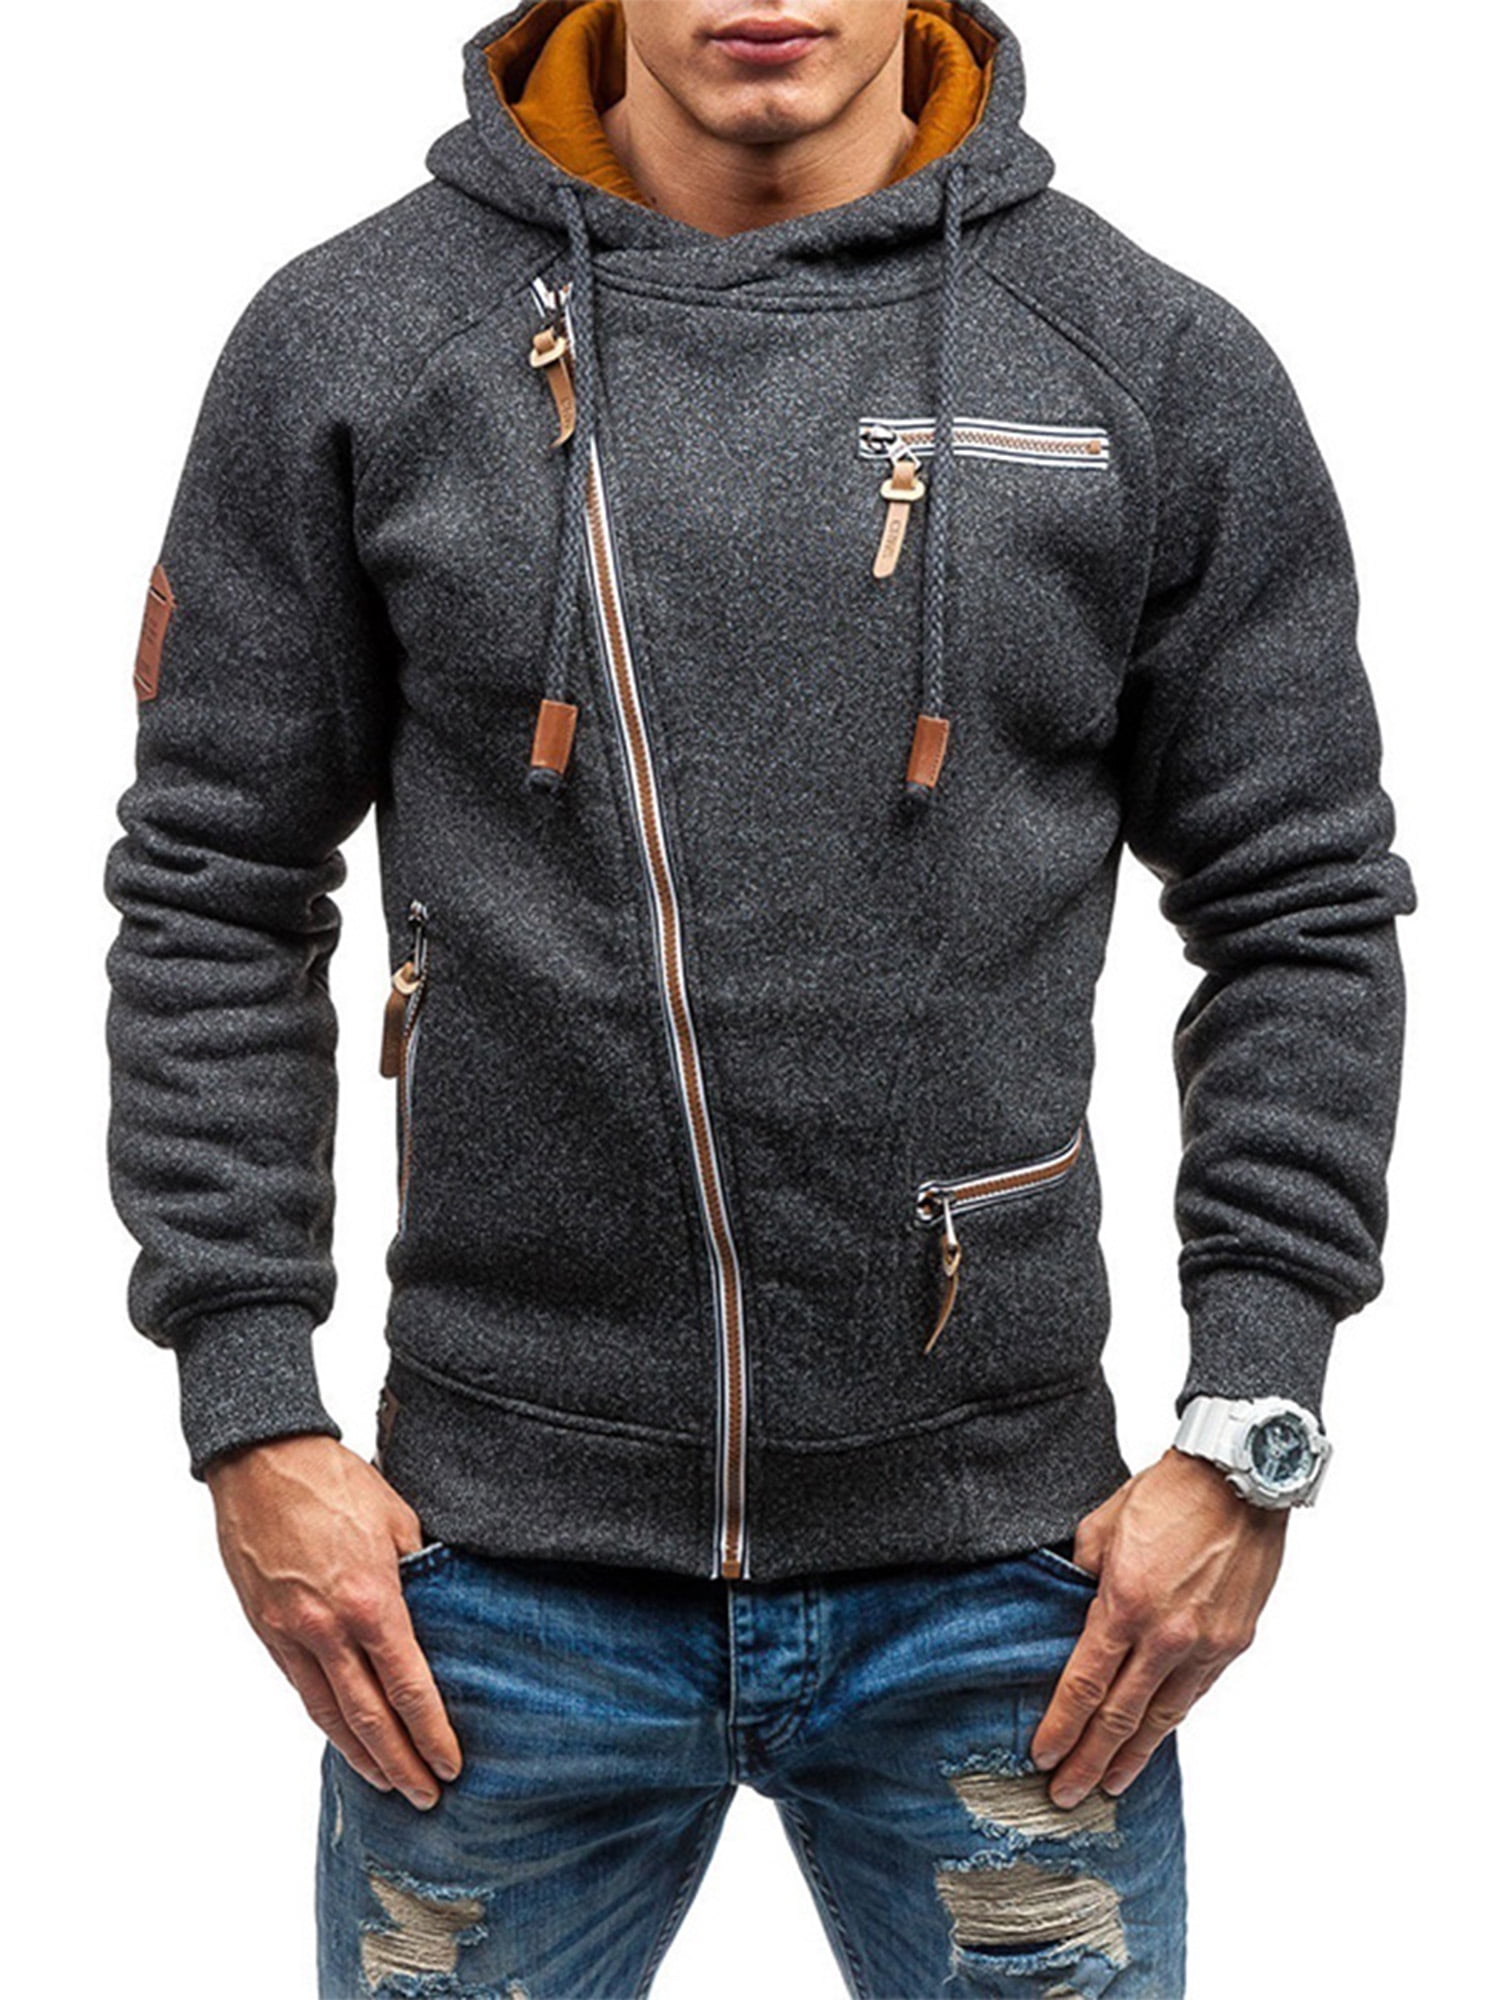 Men's Tops Male Coat Hooded Tops Jacket Stylish Winter Zipper Outerwear Coat